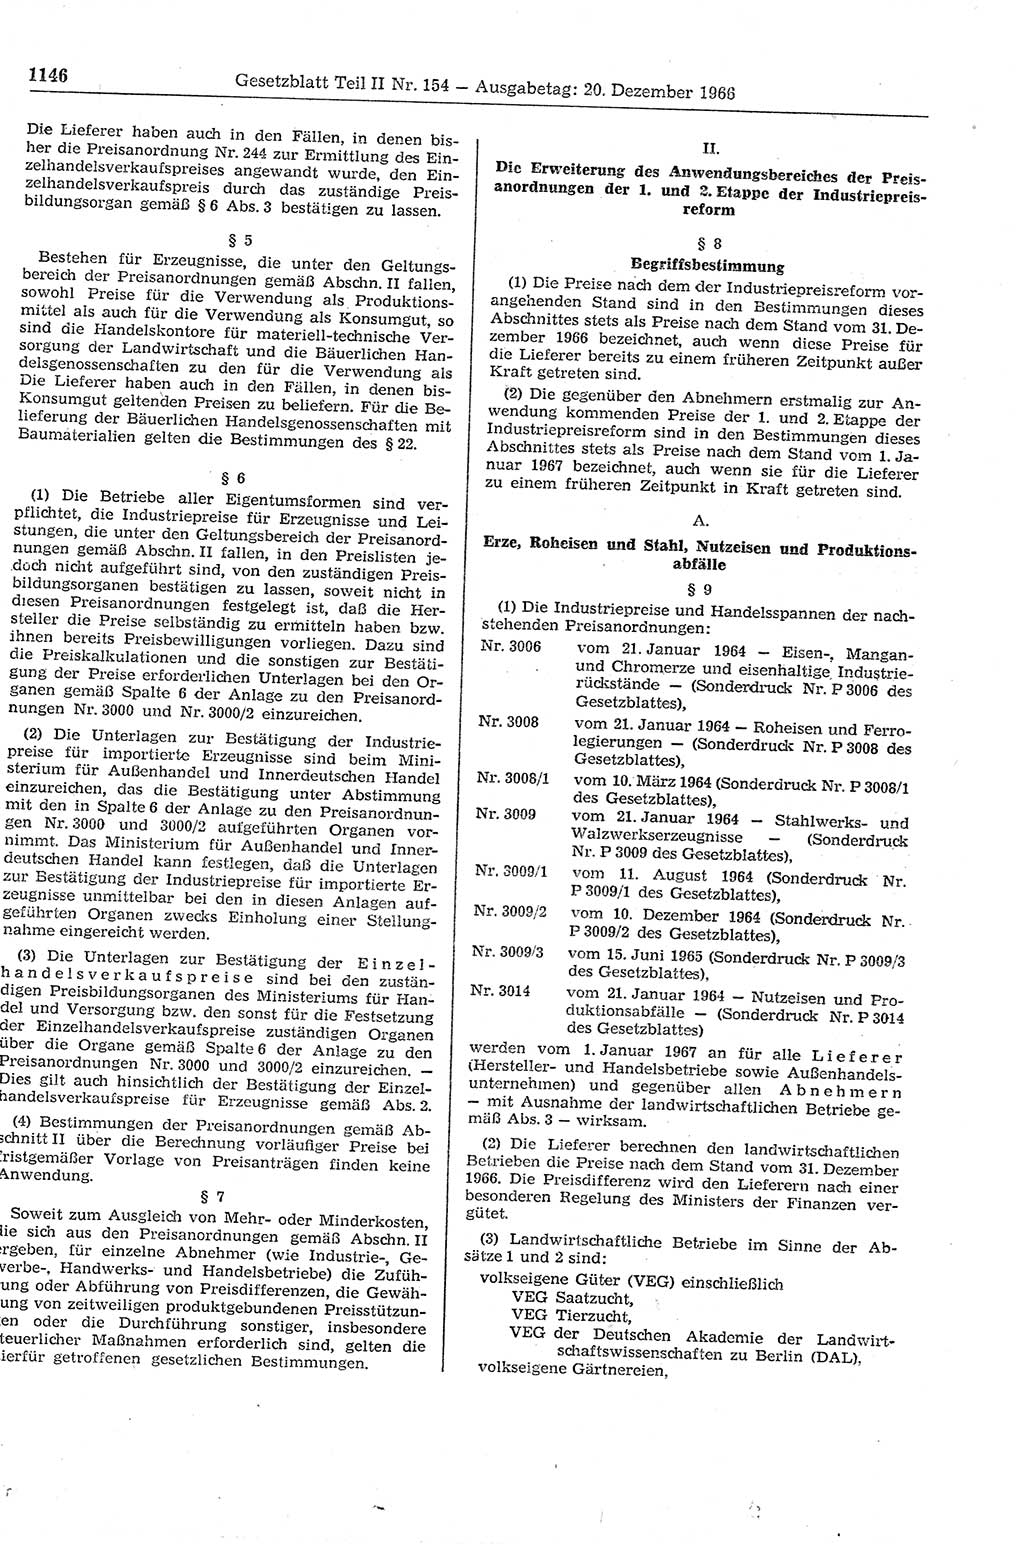 Gesetzblatt (GBl.) der Deutschen Demokratischen Republik (DDR) Teil ⅠⅠ 1966, Seite 1146 (GBl. DDR ⅠⅠ 1966, S. 1146)